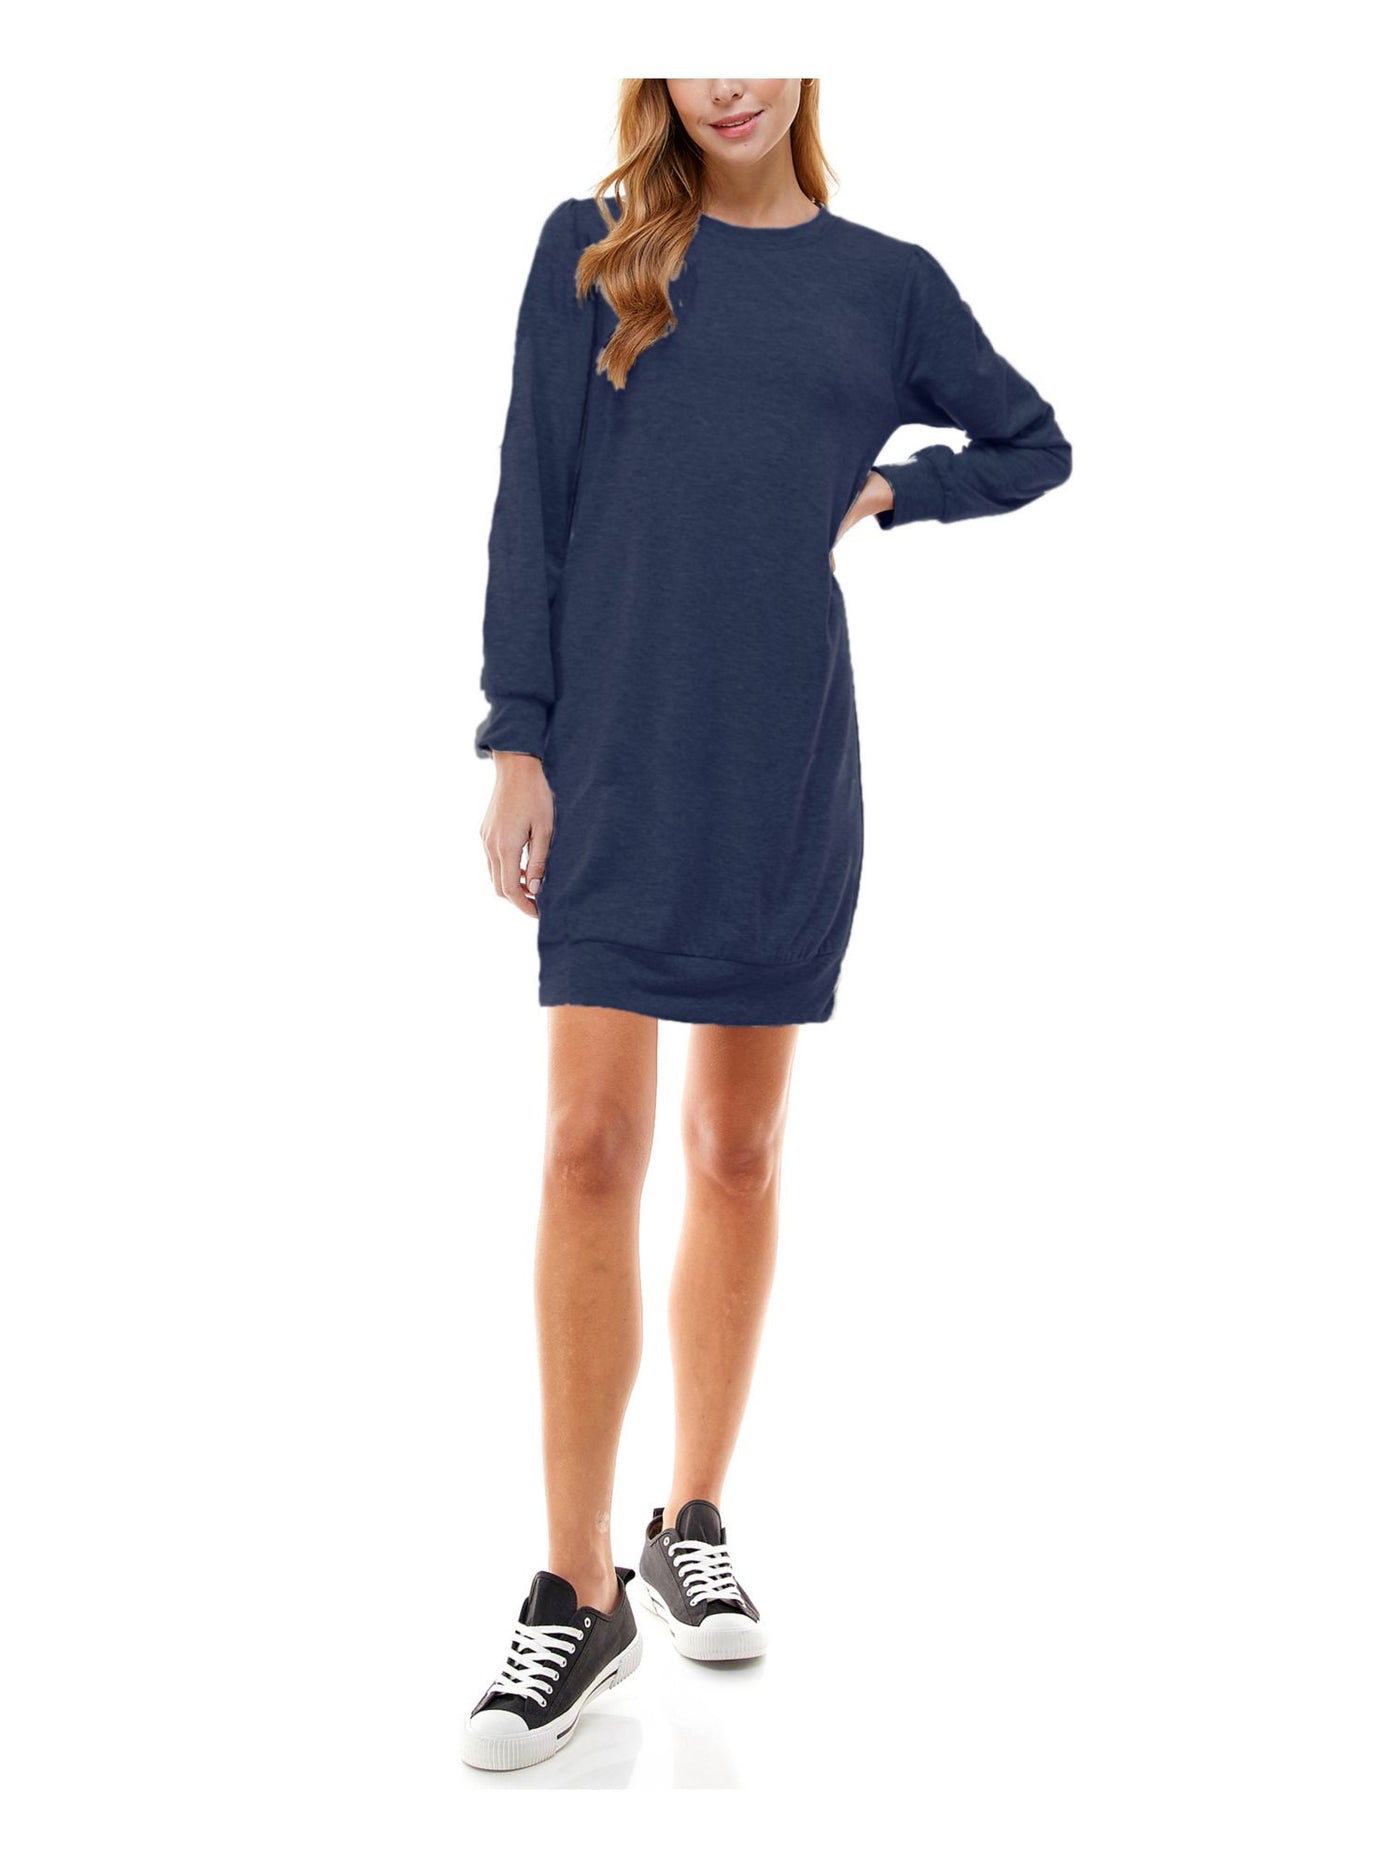 KINGSTON GREY Womens Blue Shirt Long Sleeve Crew Neck Short Dress Juniors XXS